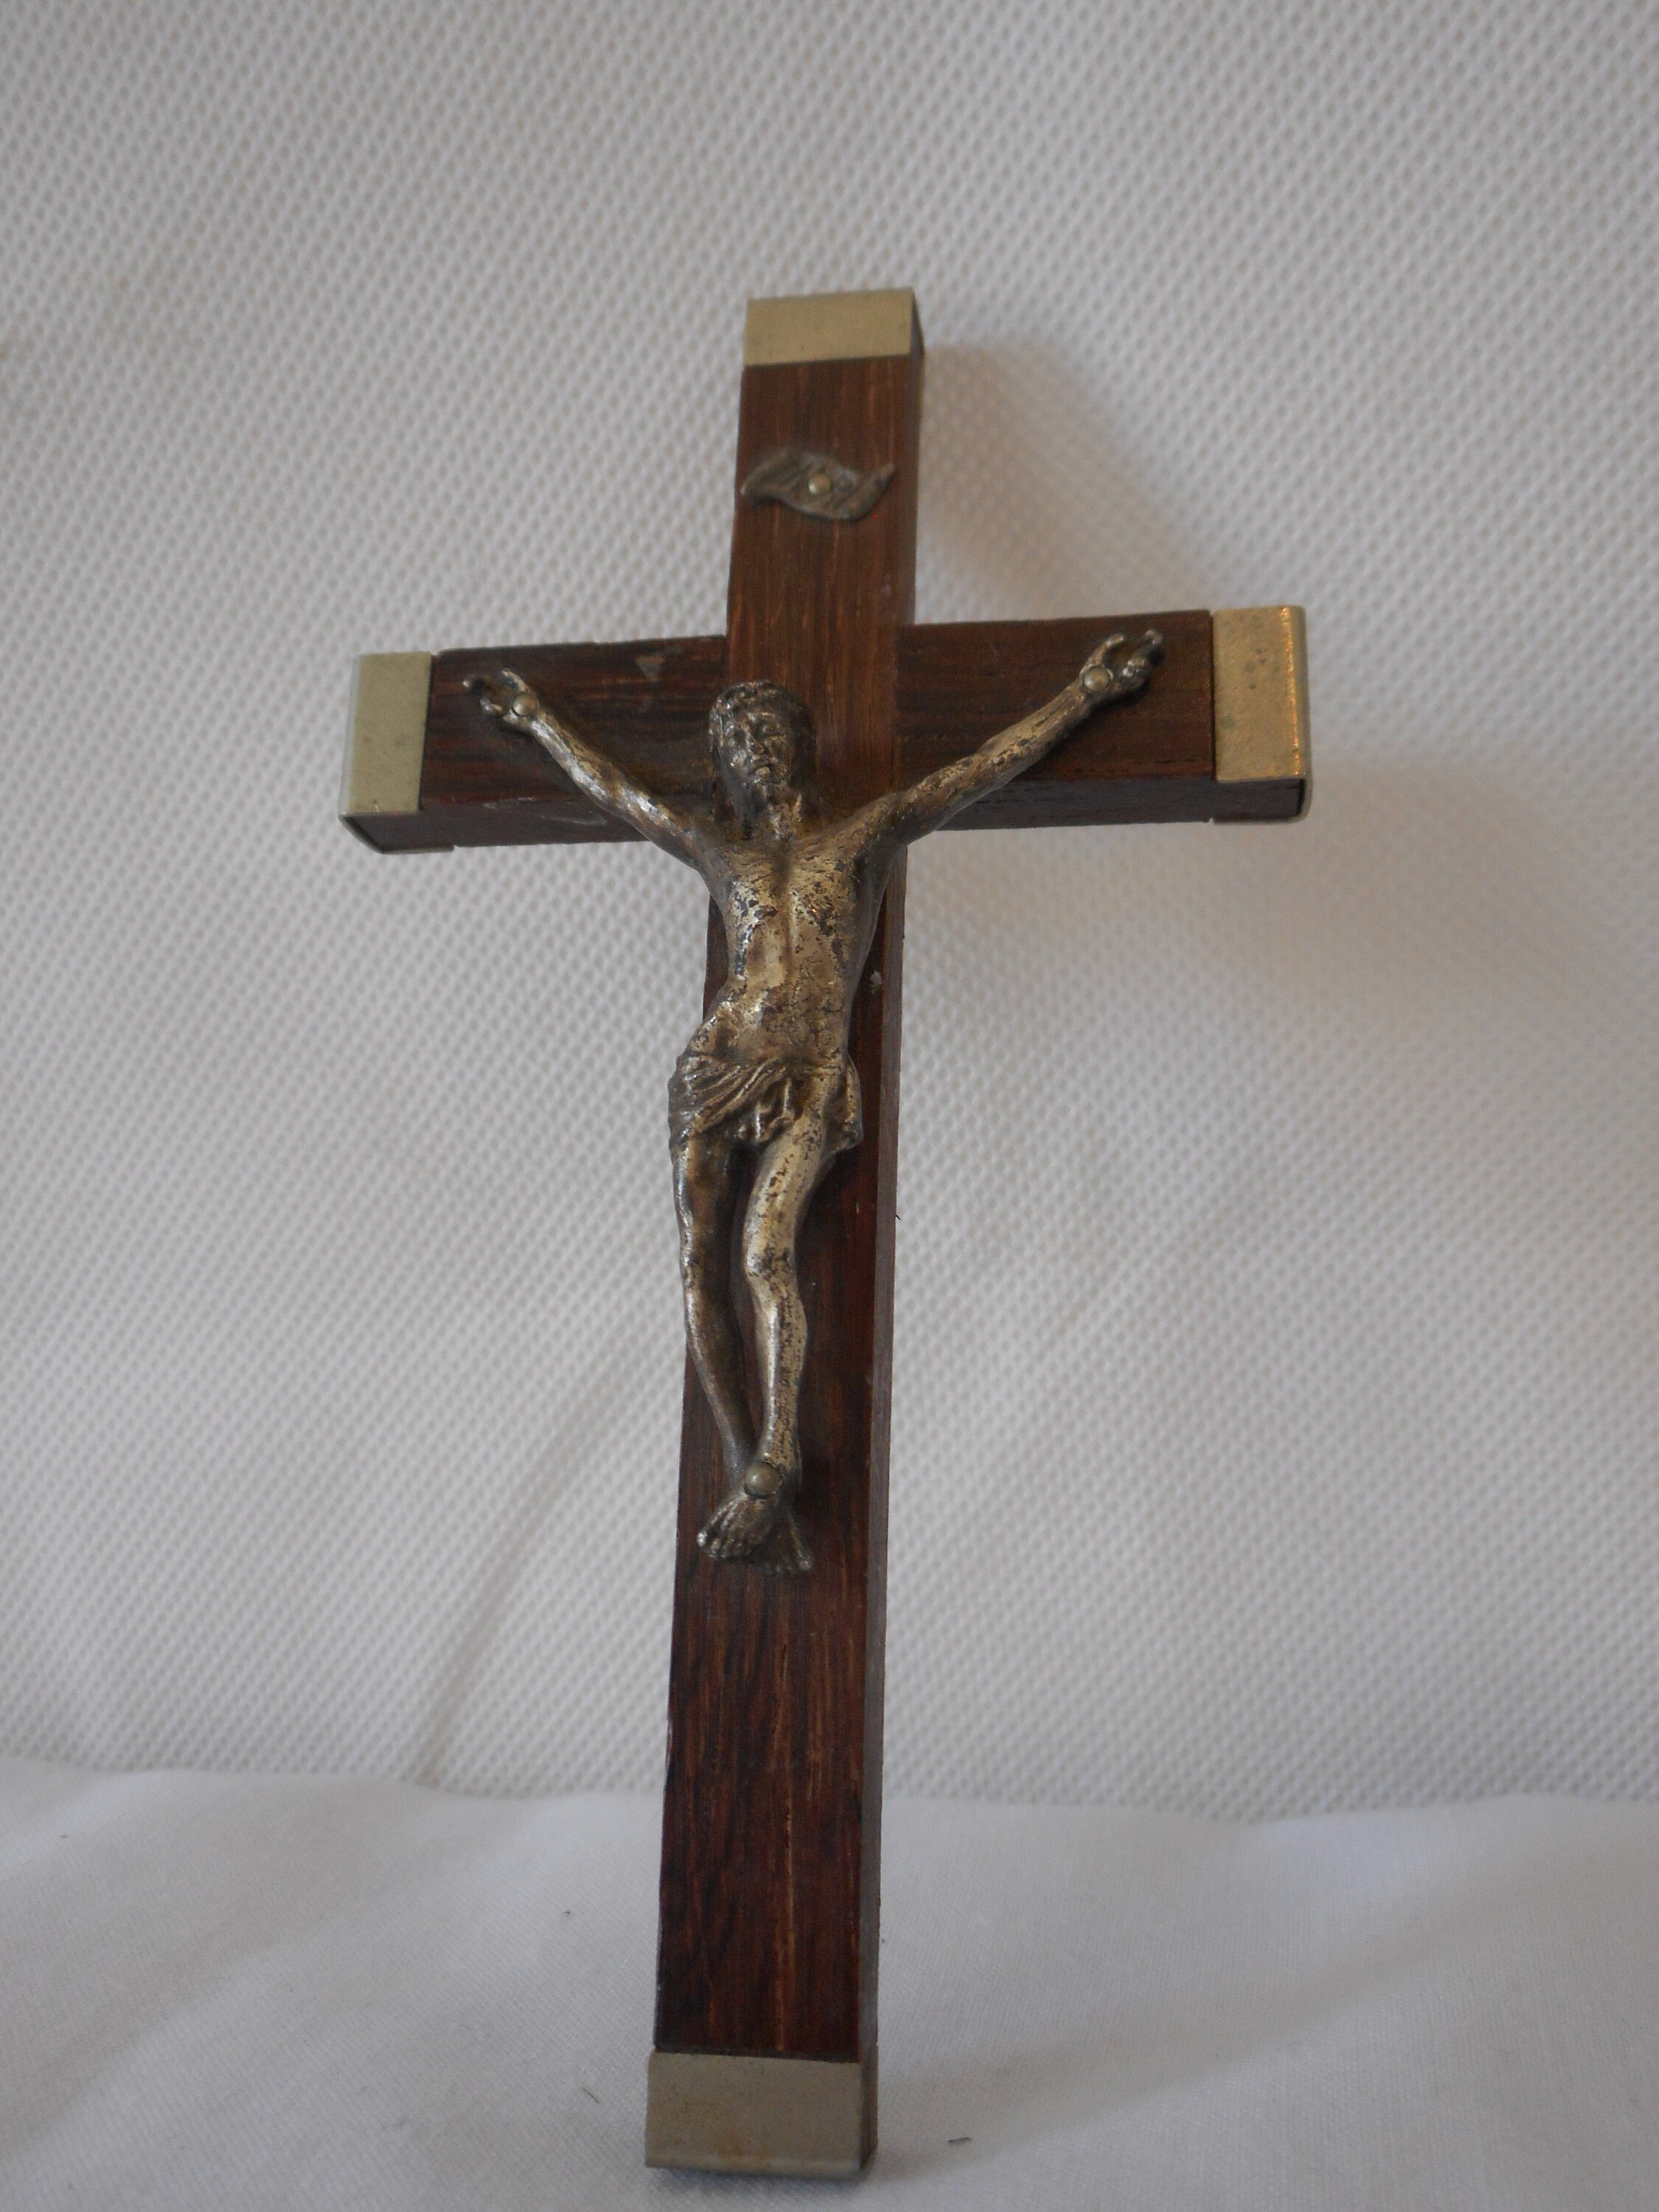 Vintage Français Petit Bois Lourdes Crucifix Religieux Croix/Ornement